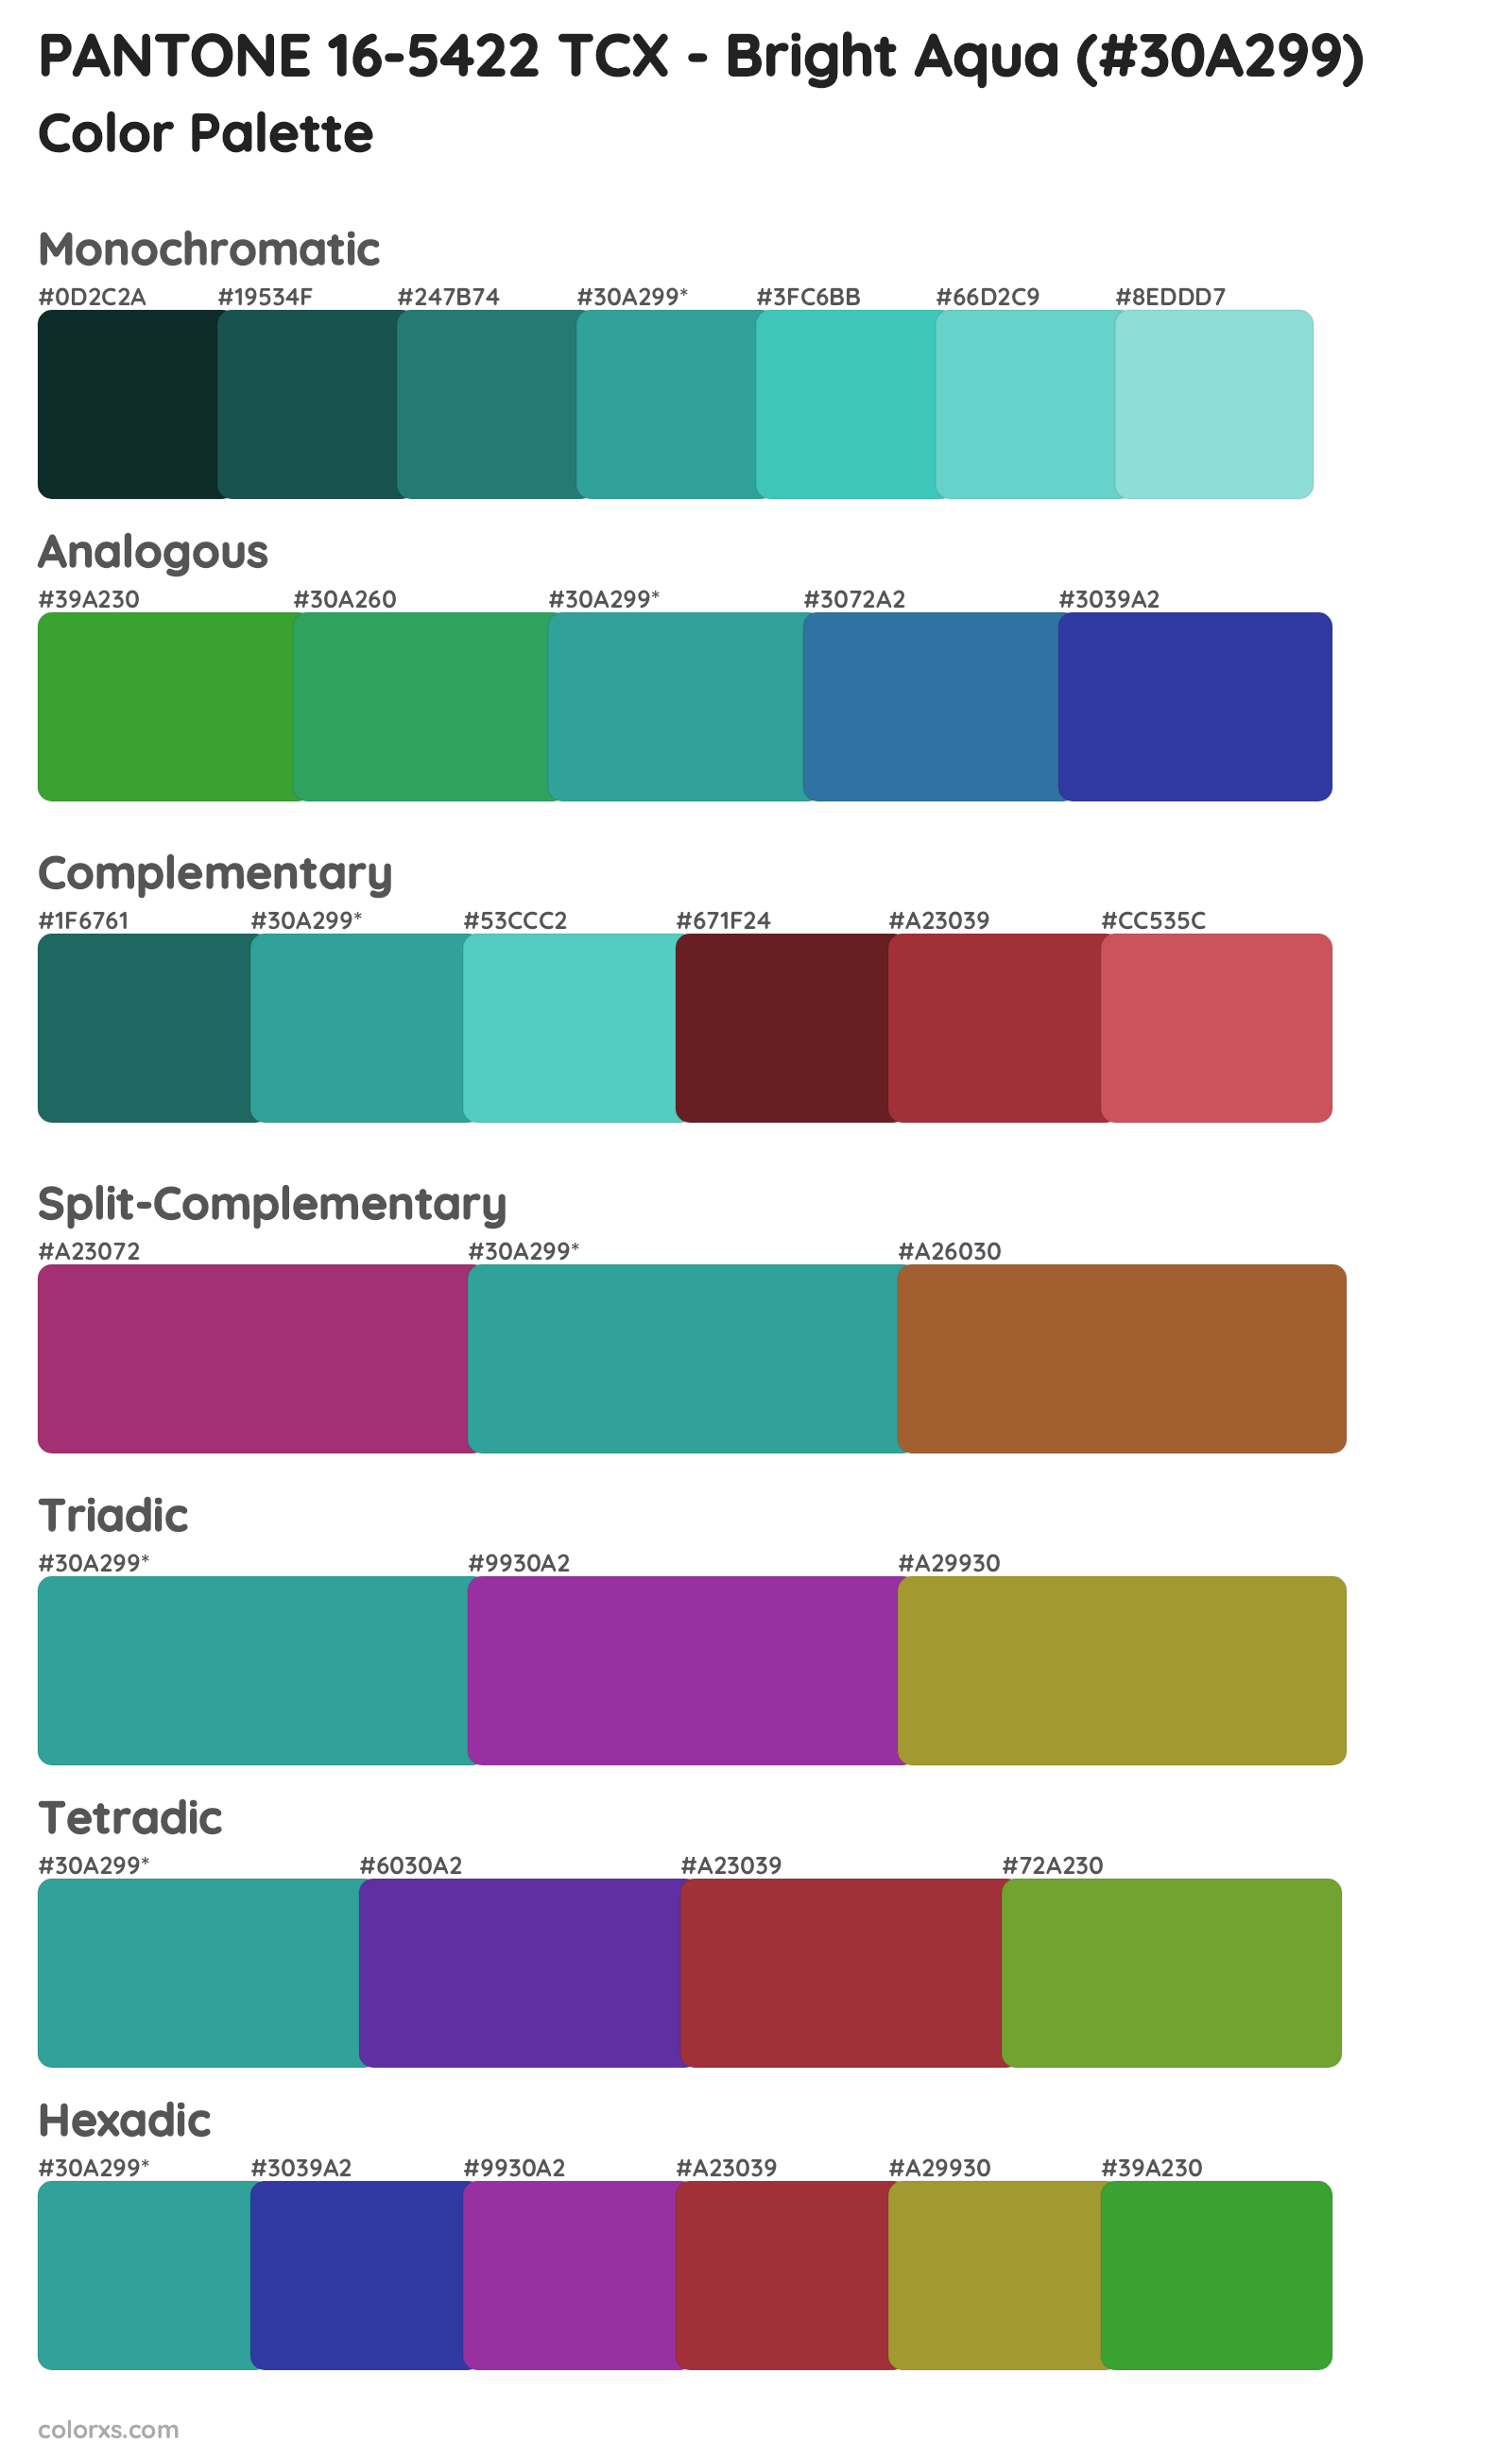 PANTONE 16-5422 TCX - Bright Aqua Color Scheme Palettes